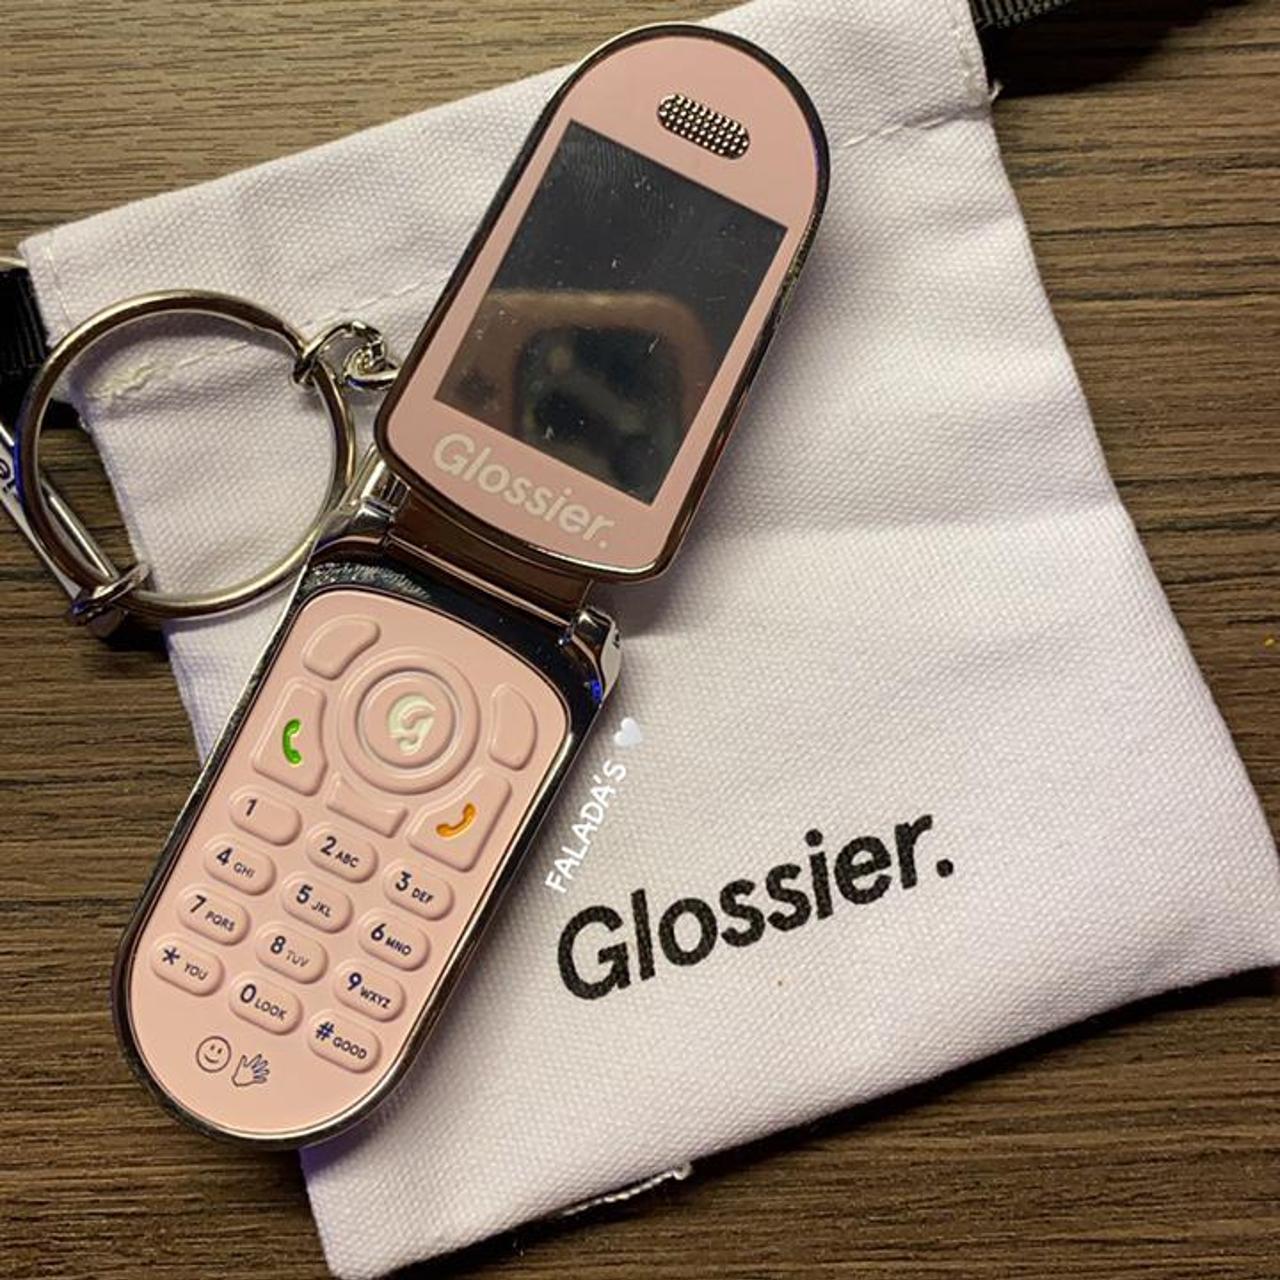 Glossier LA cellphone keychain 💕open to offers - Depop